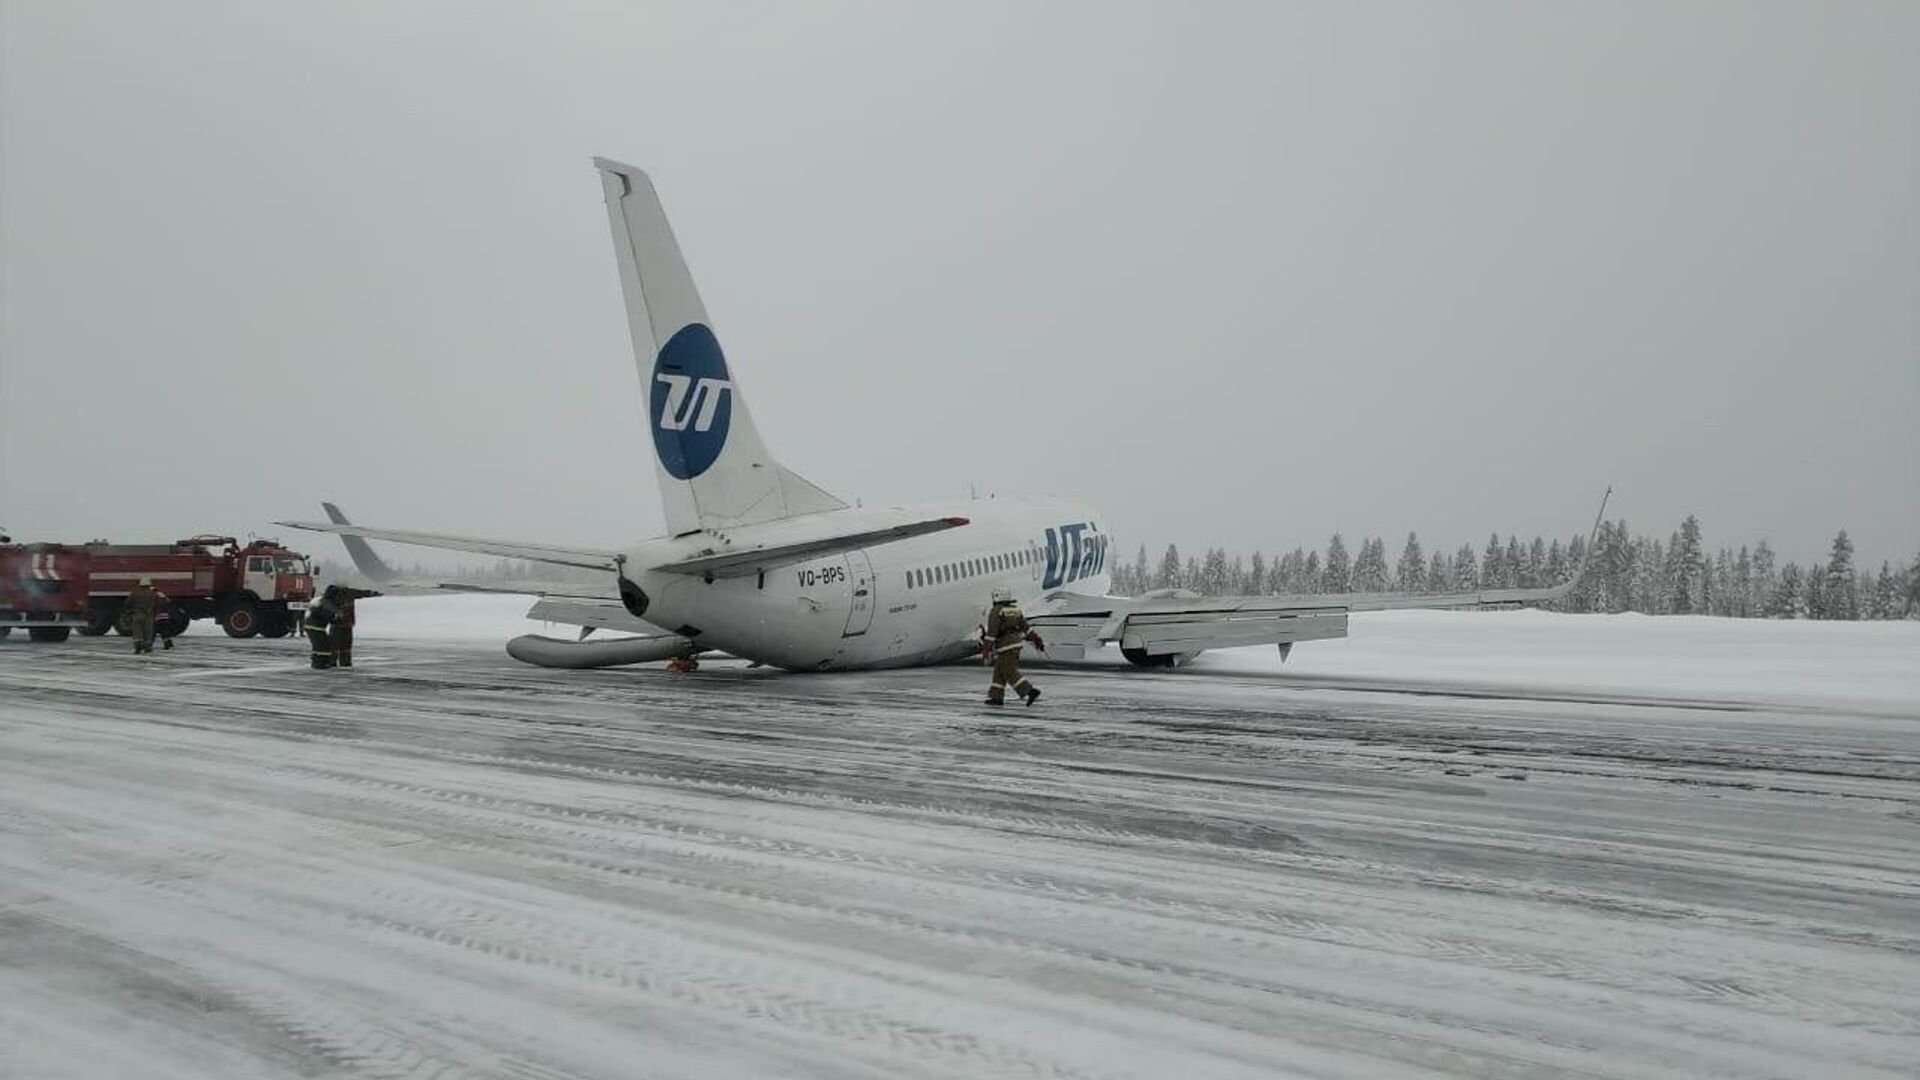 Самолет UTair совершил жесткую посадку в аэропорту Усинска. 9 февраля 2020 - РИА Новости, 1920, 09.02.2020